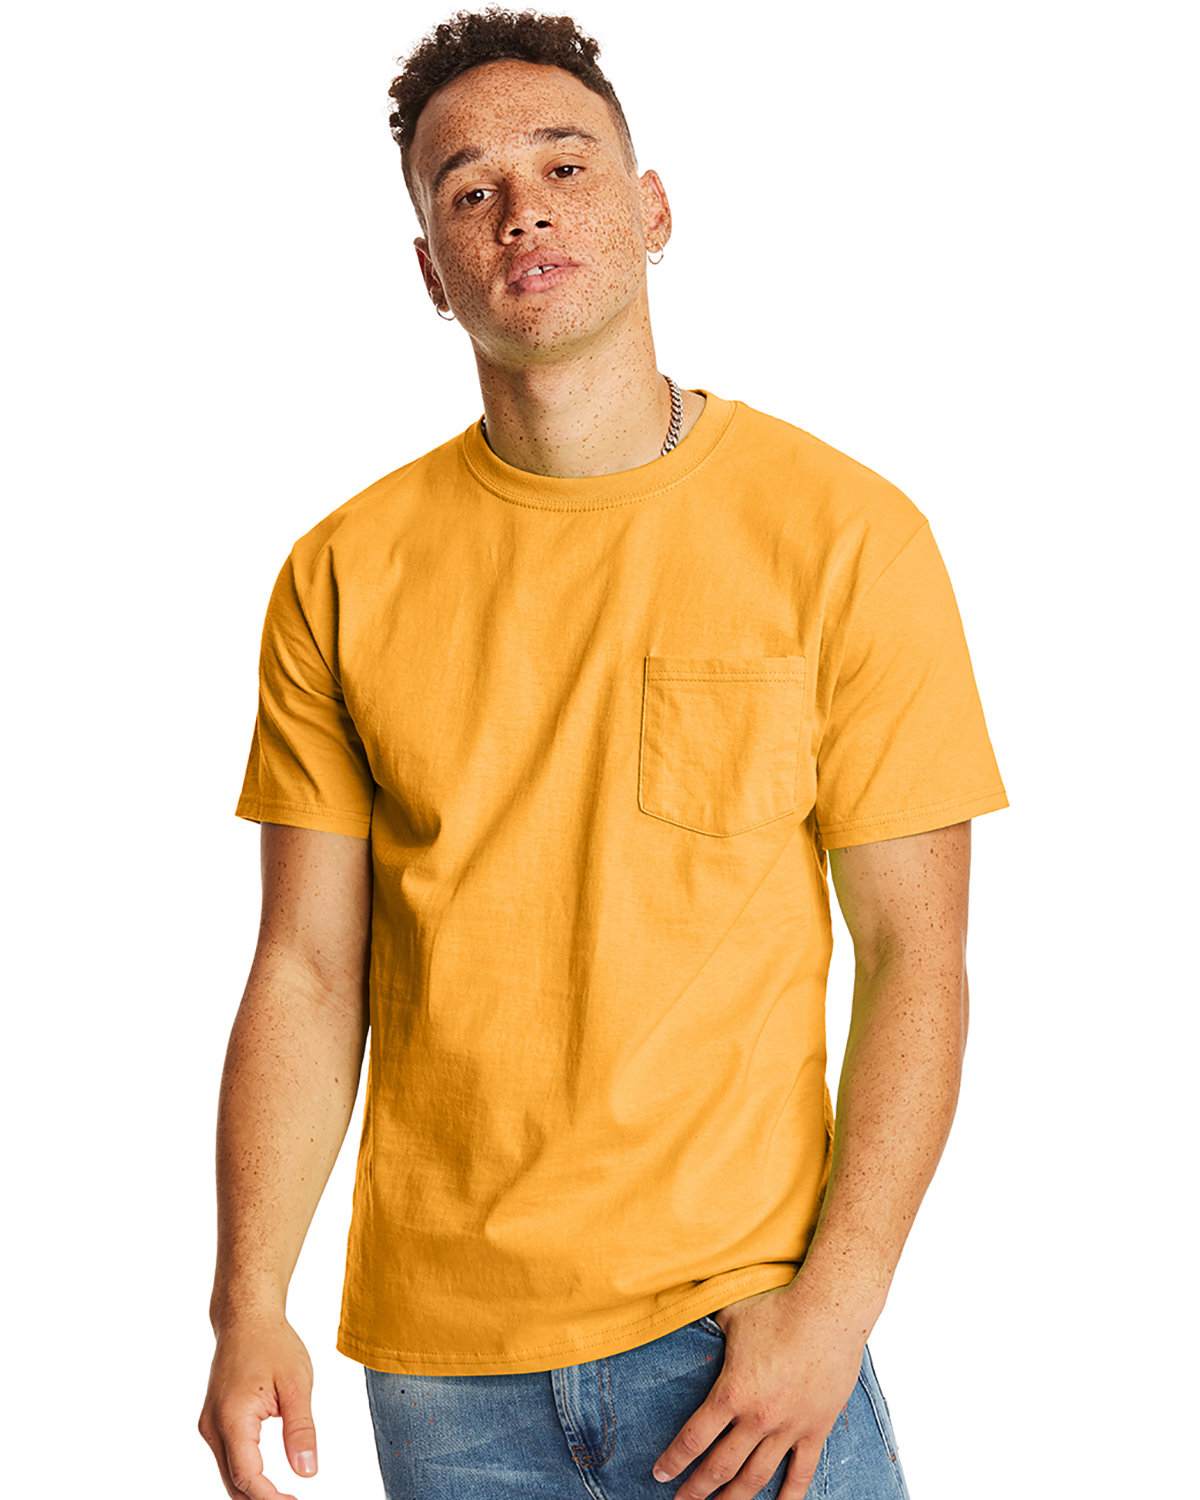 Hanes Men's Authentic-T Pocket T-Shirt gold 